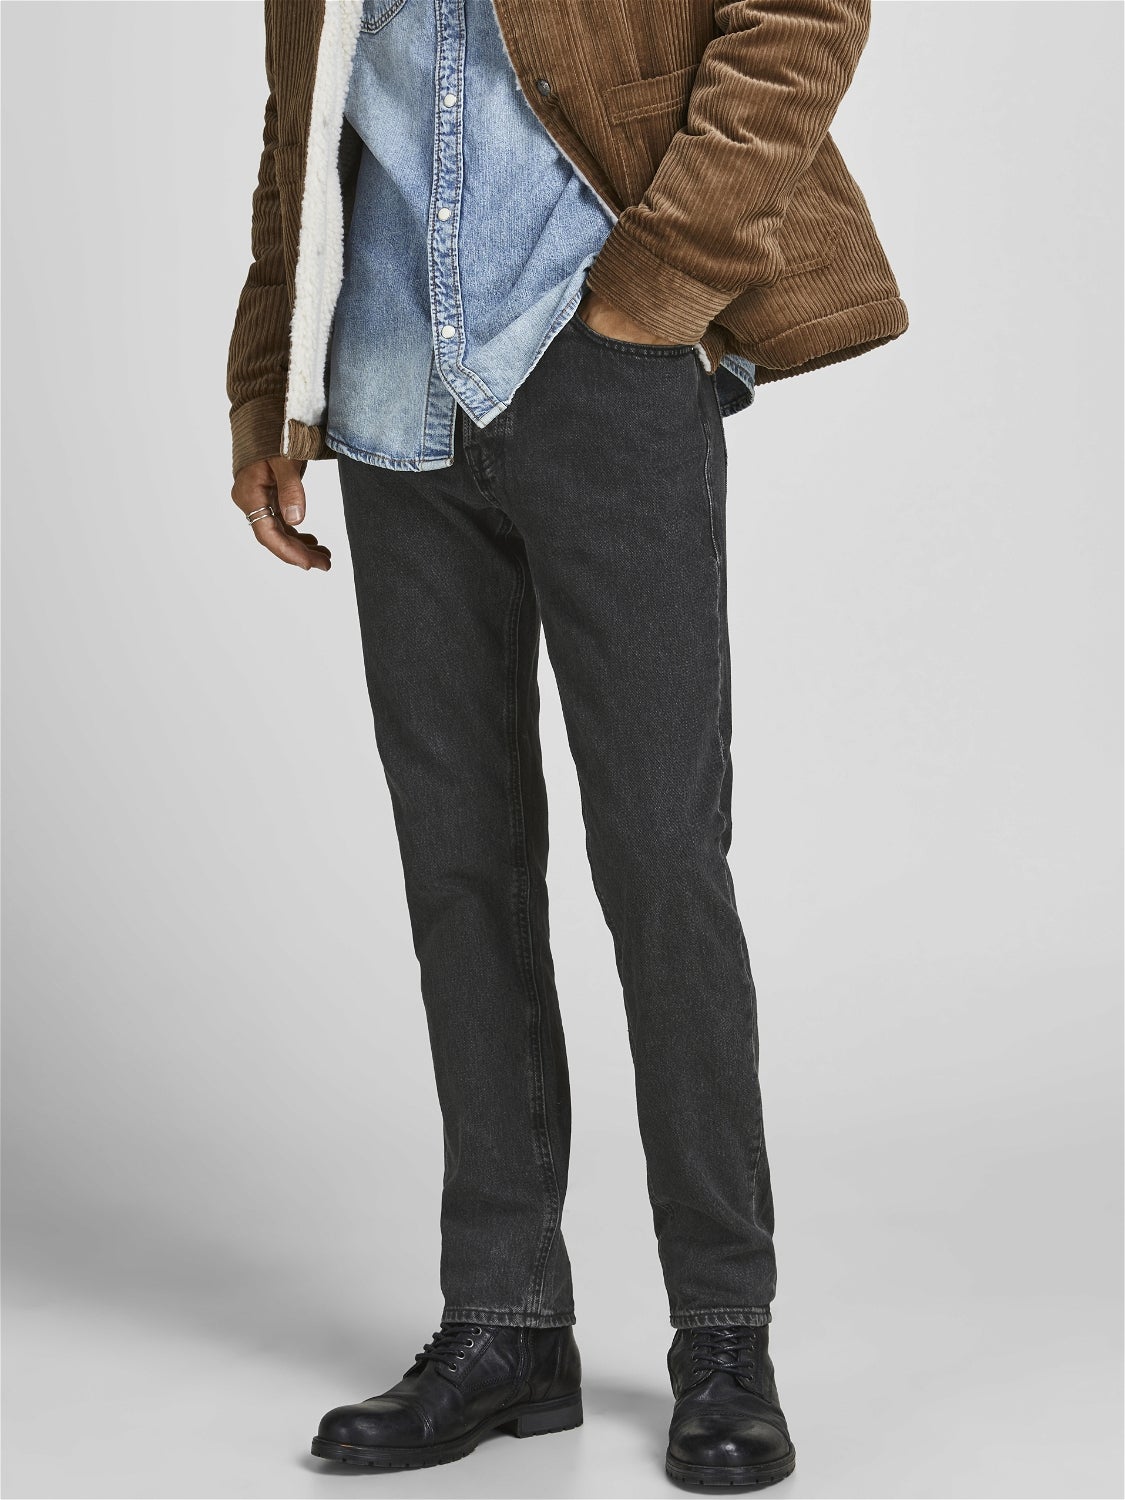 HERREN Jeans NO STYLE Grau 38 Rabatt 64 % Jack & Jones Straight jeans 